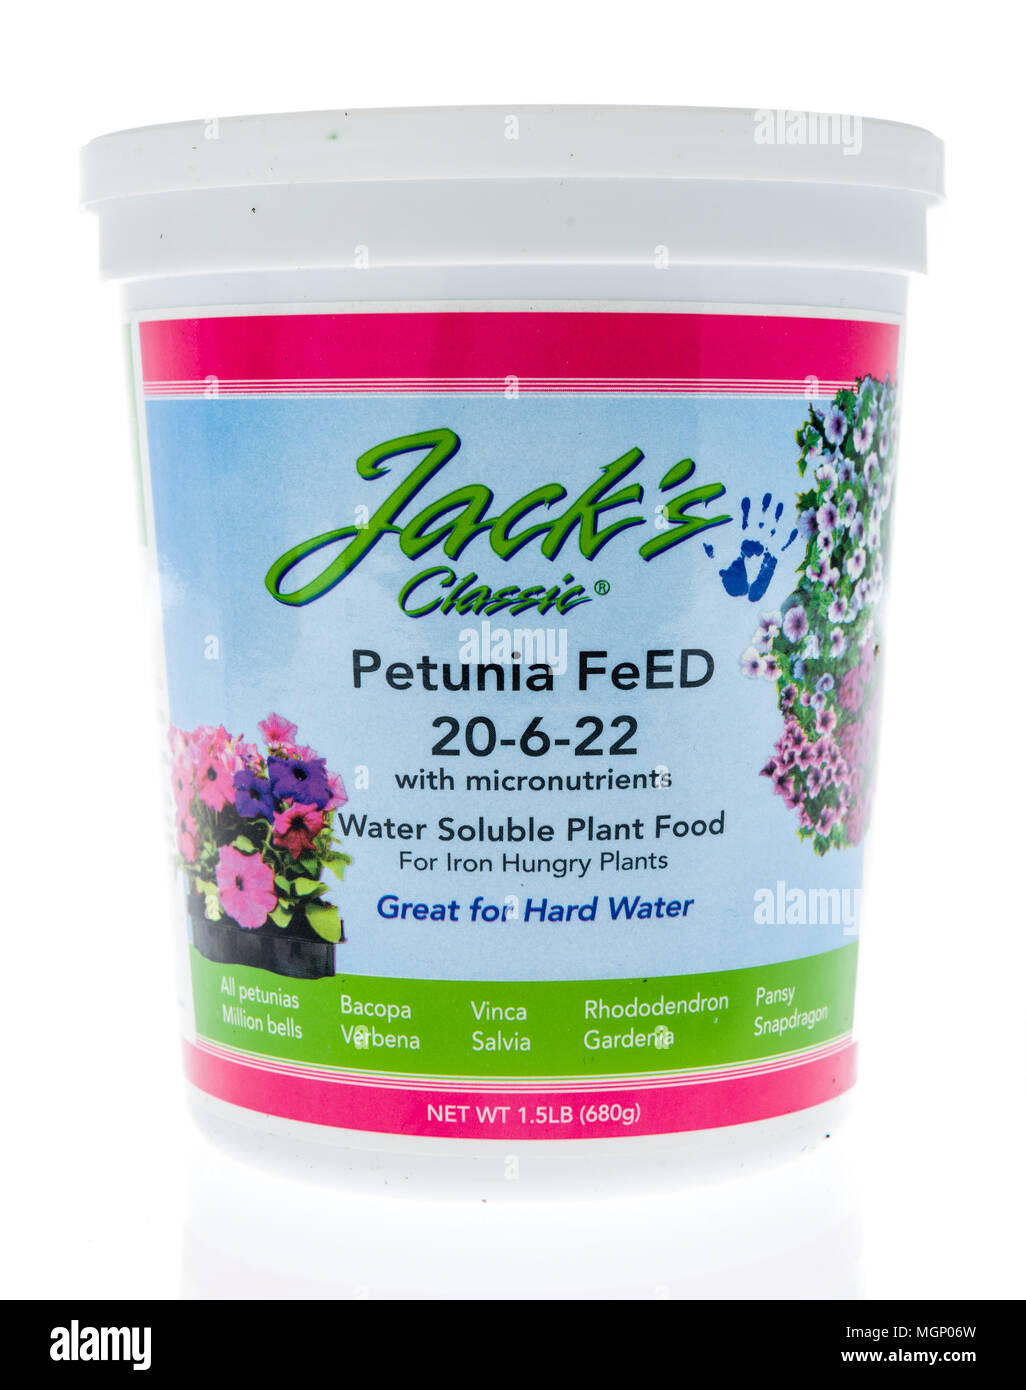 Winneconne, WI - 11 März 2018: ein Behälter von Jack's Classic petunia Feed auf einem isolierten Hintergrund. Stockfoto